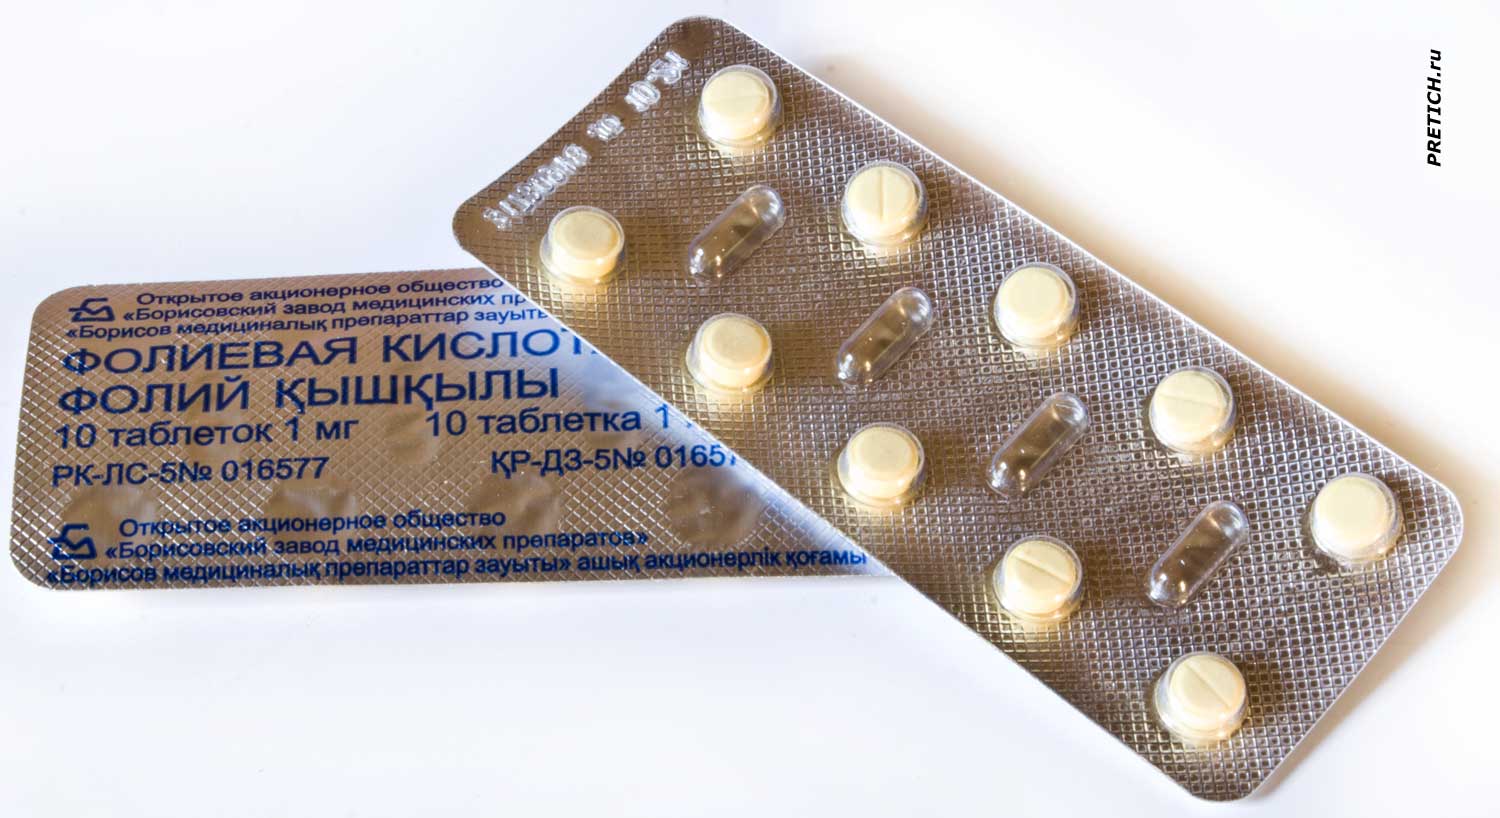 Обзор и описание таблеток фолиевой кислоты, Беларусь